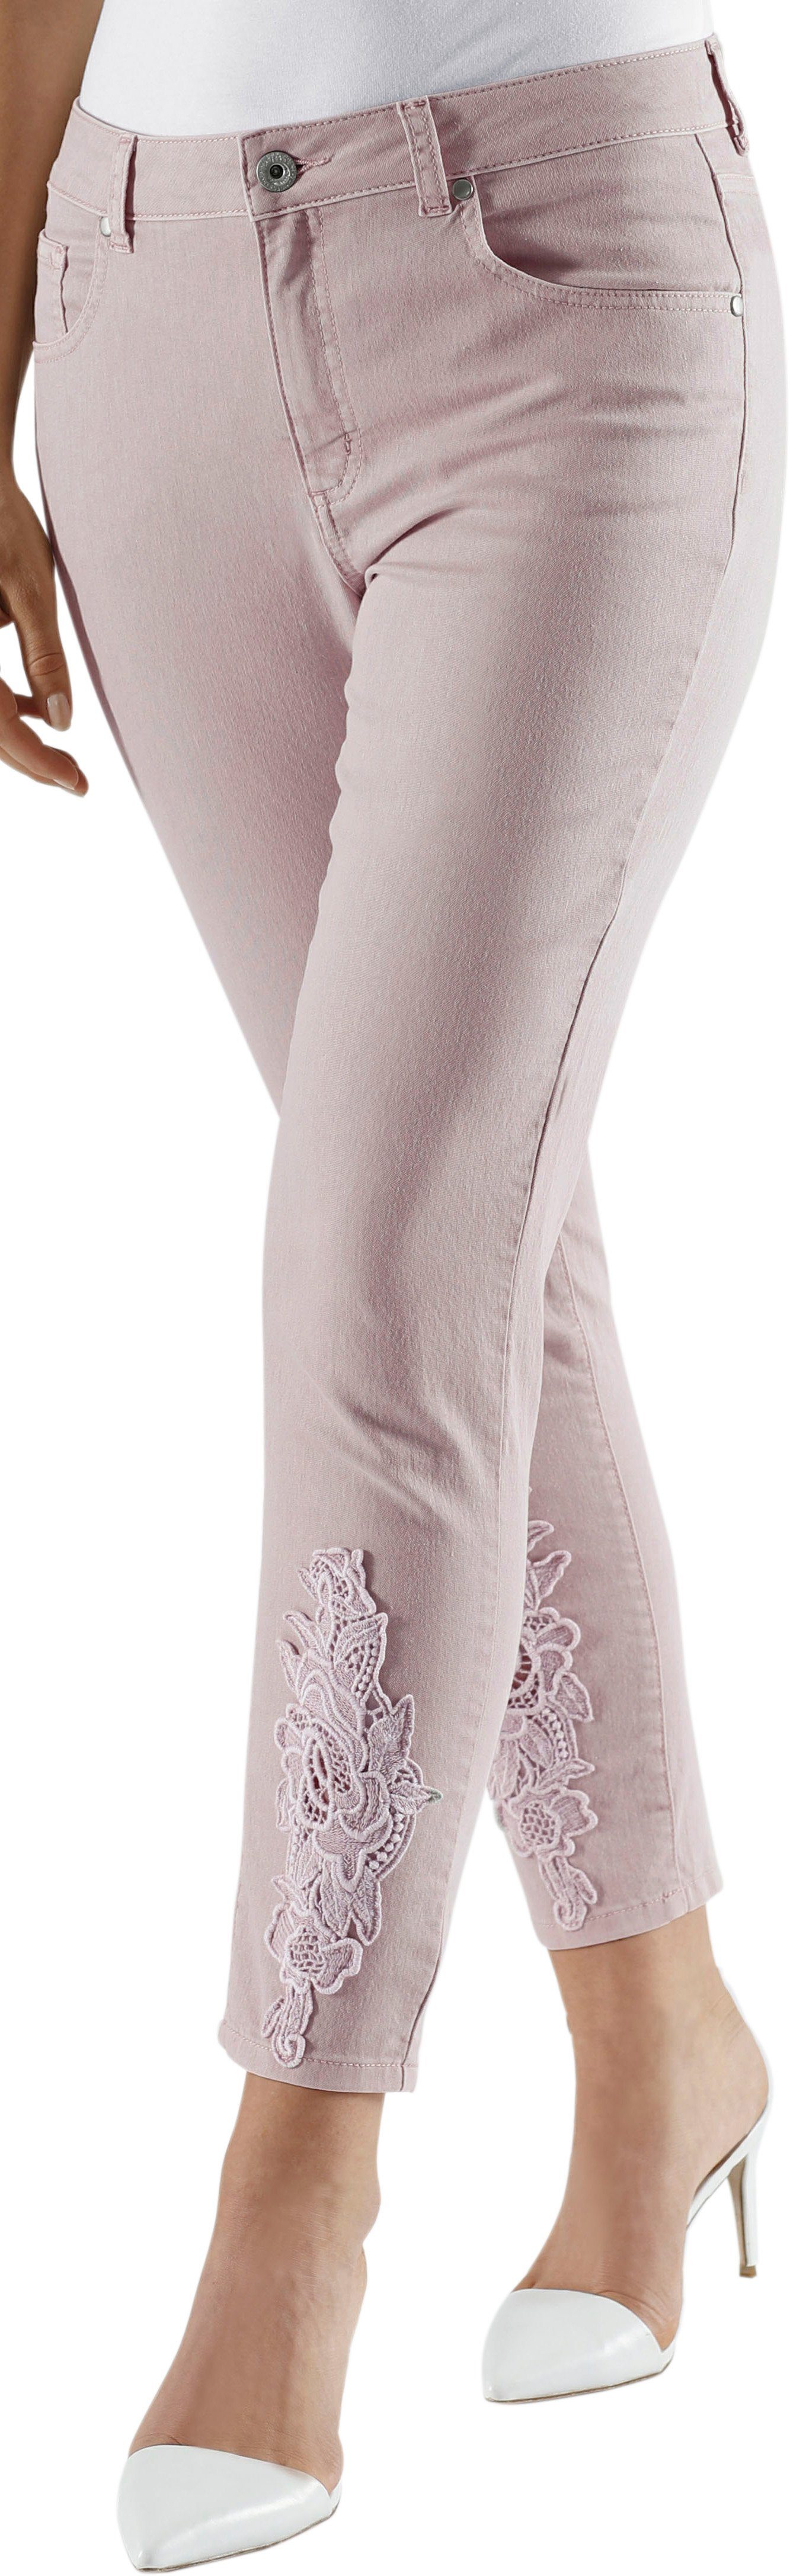 Otto - Fair Lady NU 15% KORTING: Fair Lady 7/8-broek in elastische jeanskwaliteit